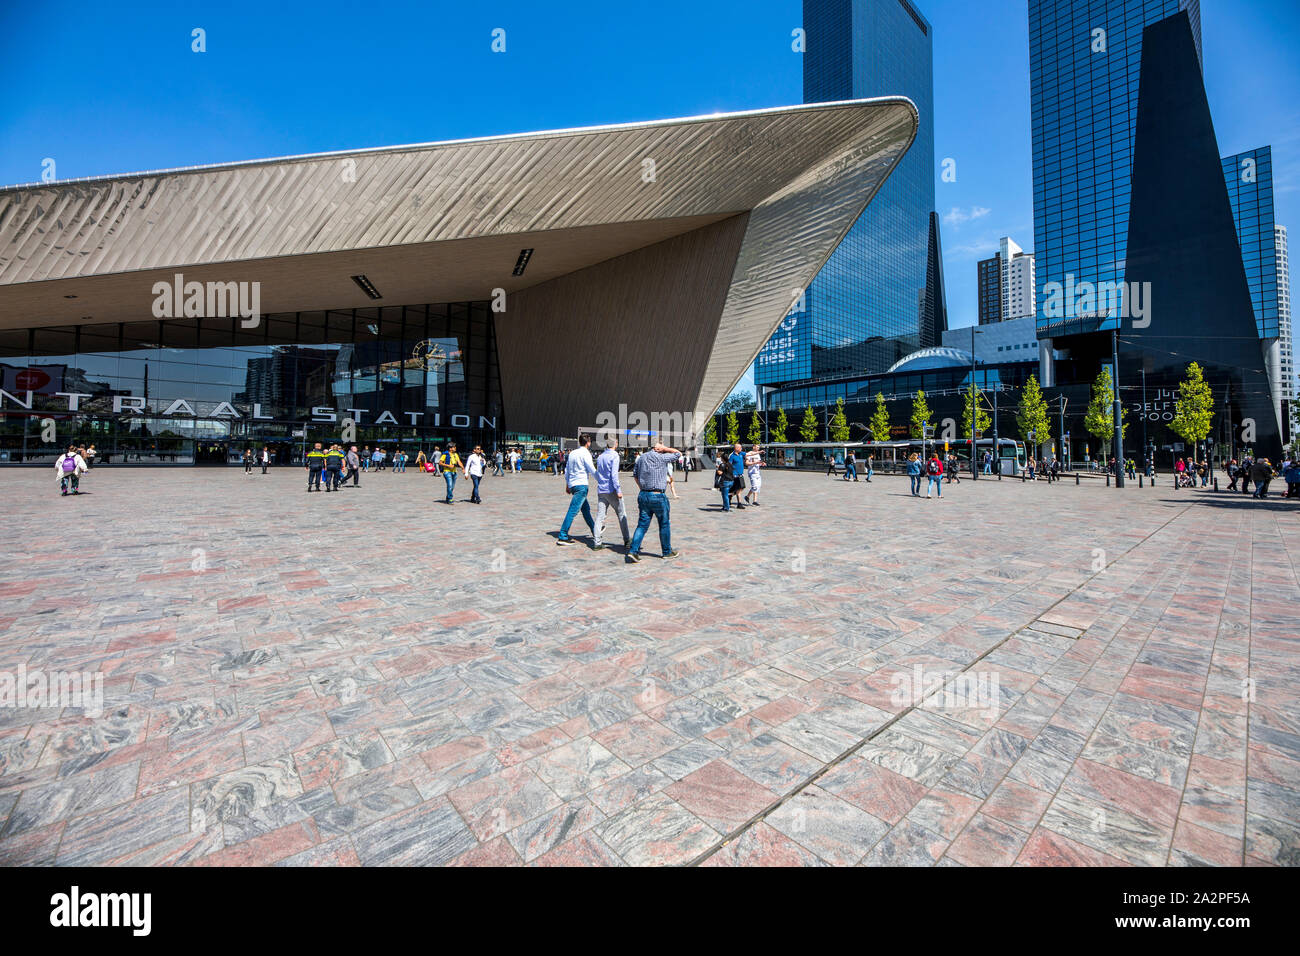 La gare centrale de Rotterdam Centraal, Gare, Hall, Pays-Bas Delftse, immeuble de bureaux, Port Banque D'Images